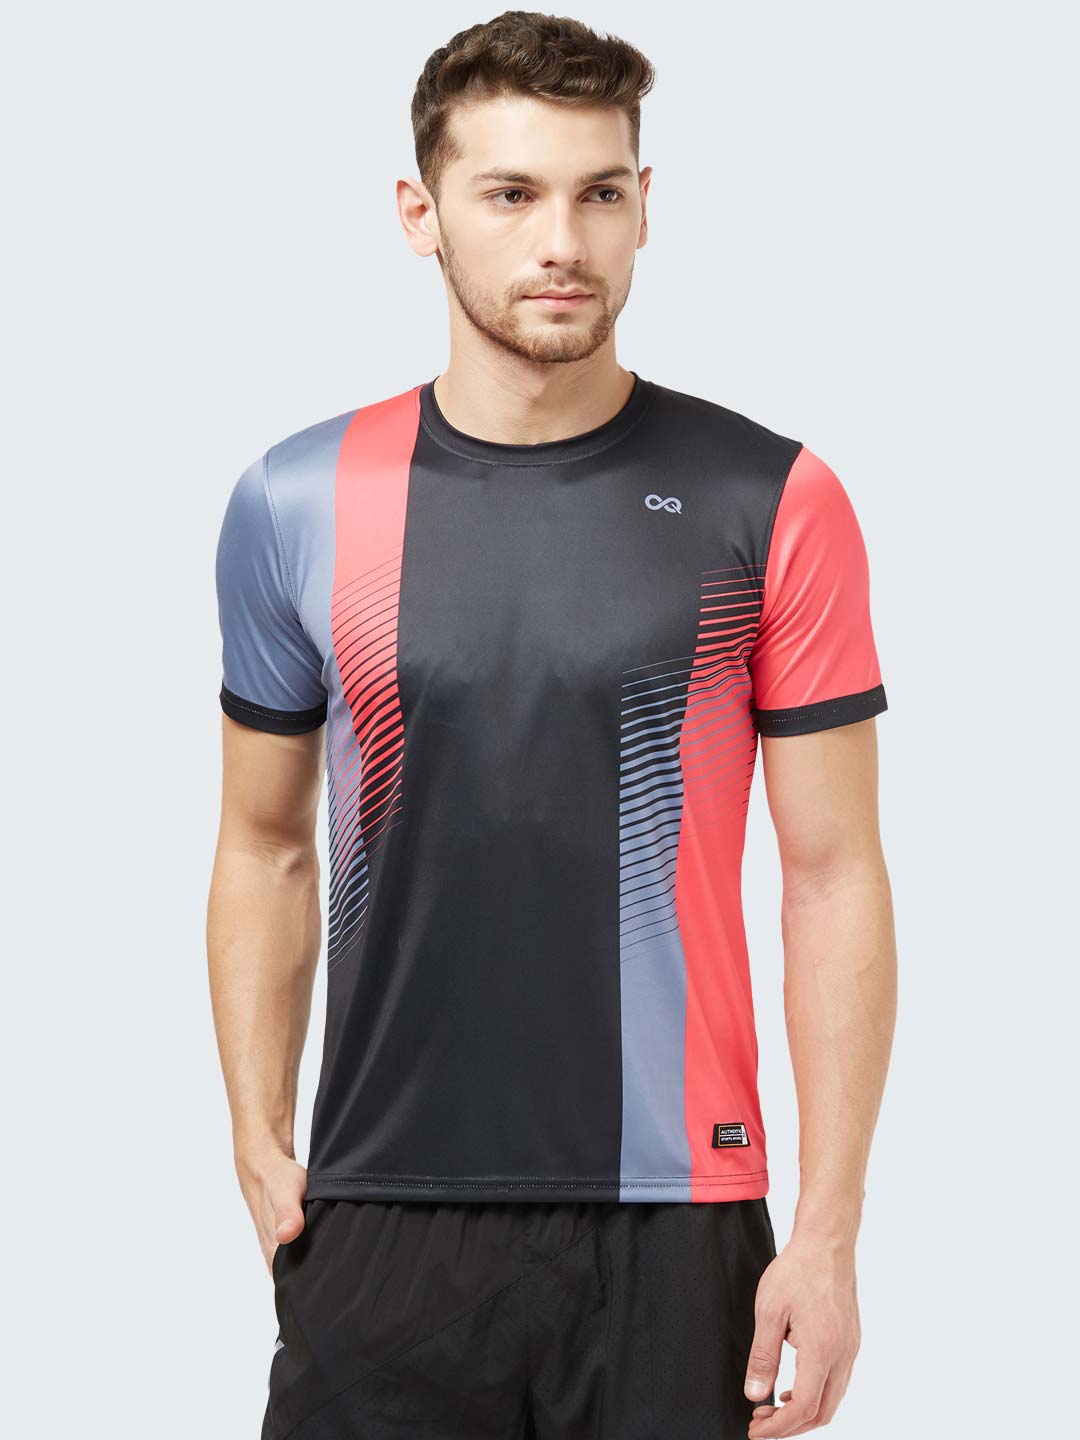 verbergen Sortie ondergeschikt Men's Geometric Active Sports T-Shirt: Black | Sportsqvest